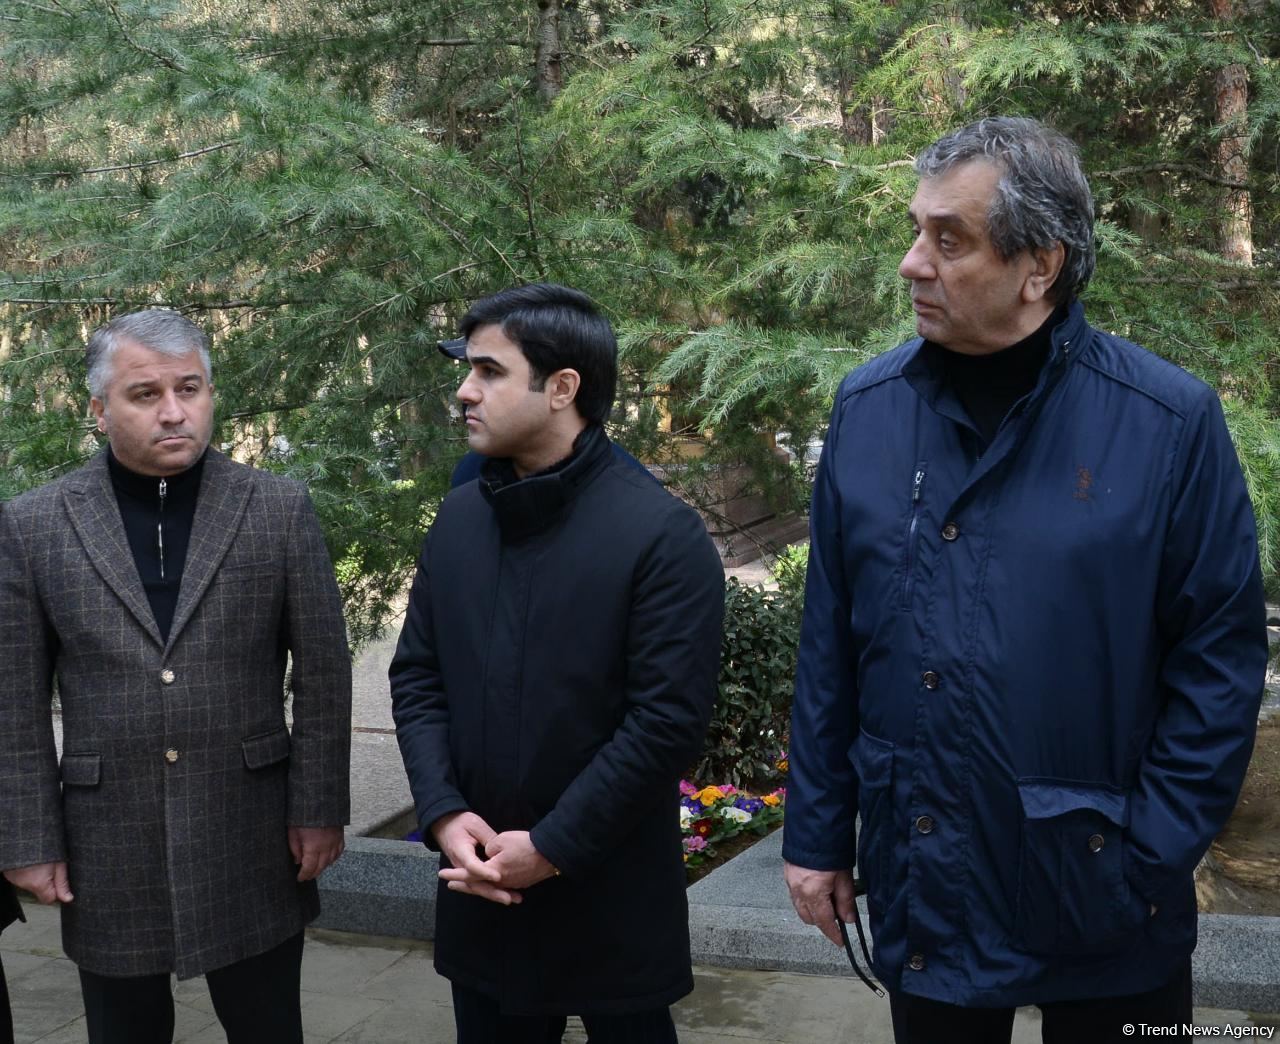 На I Аллее почетного захоронения в Баку проходит церемония прощания с народным артистом Азербайджана Алибабой Мамедовым (ФОТО)